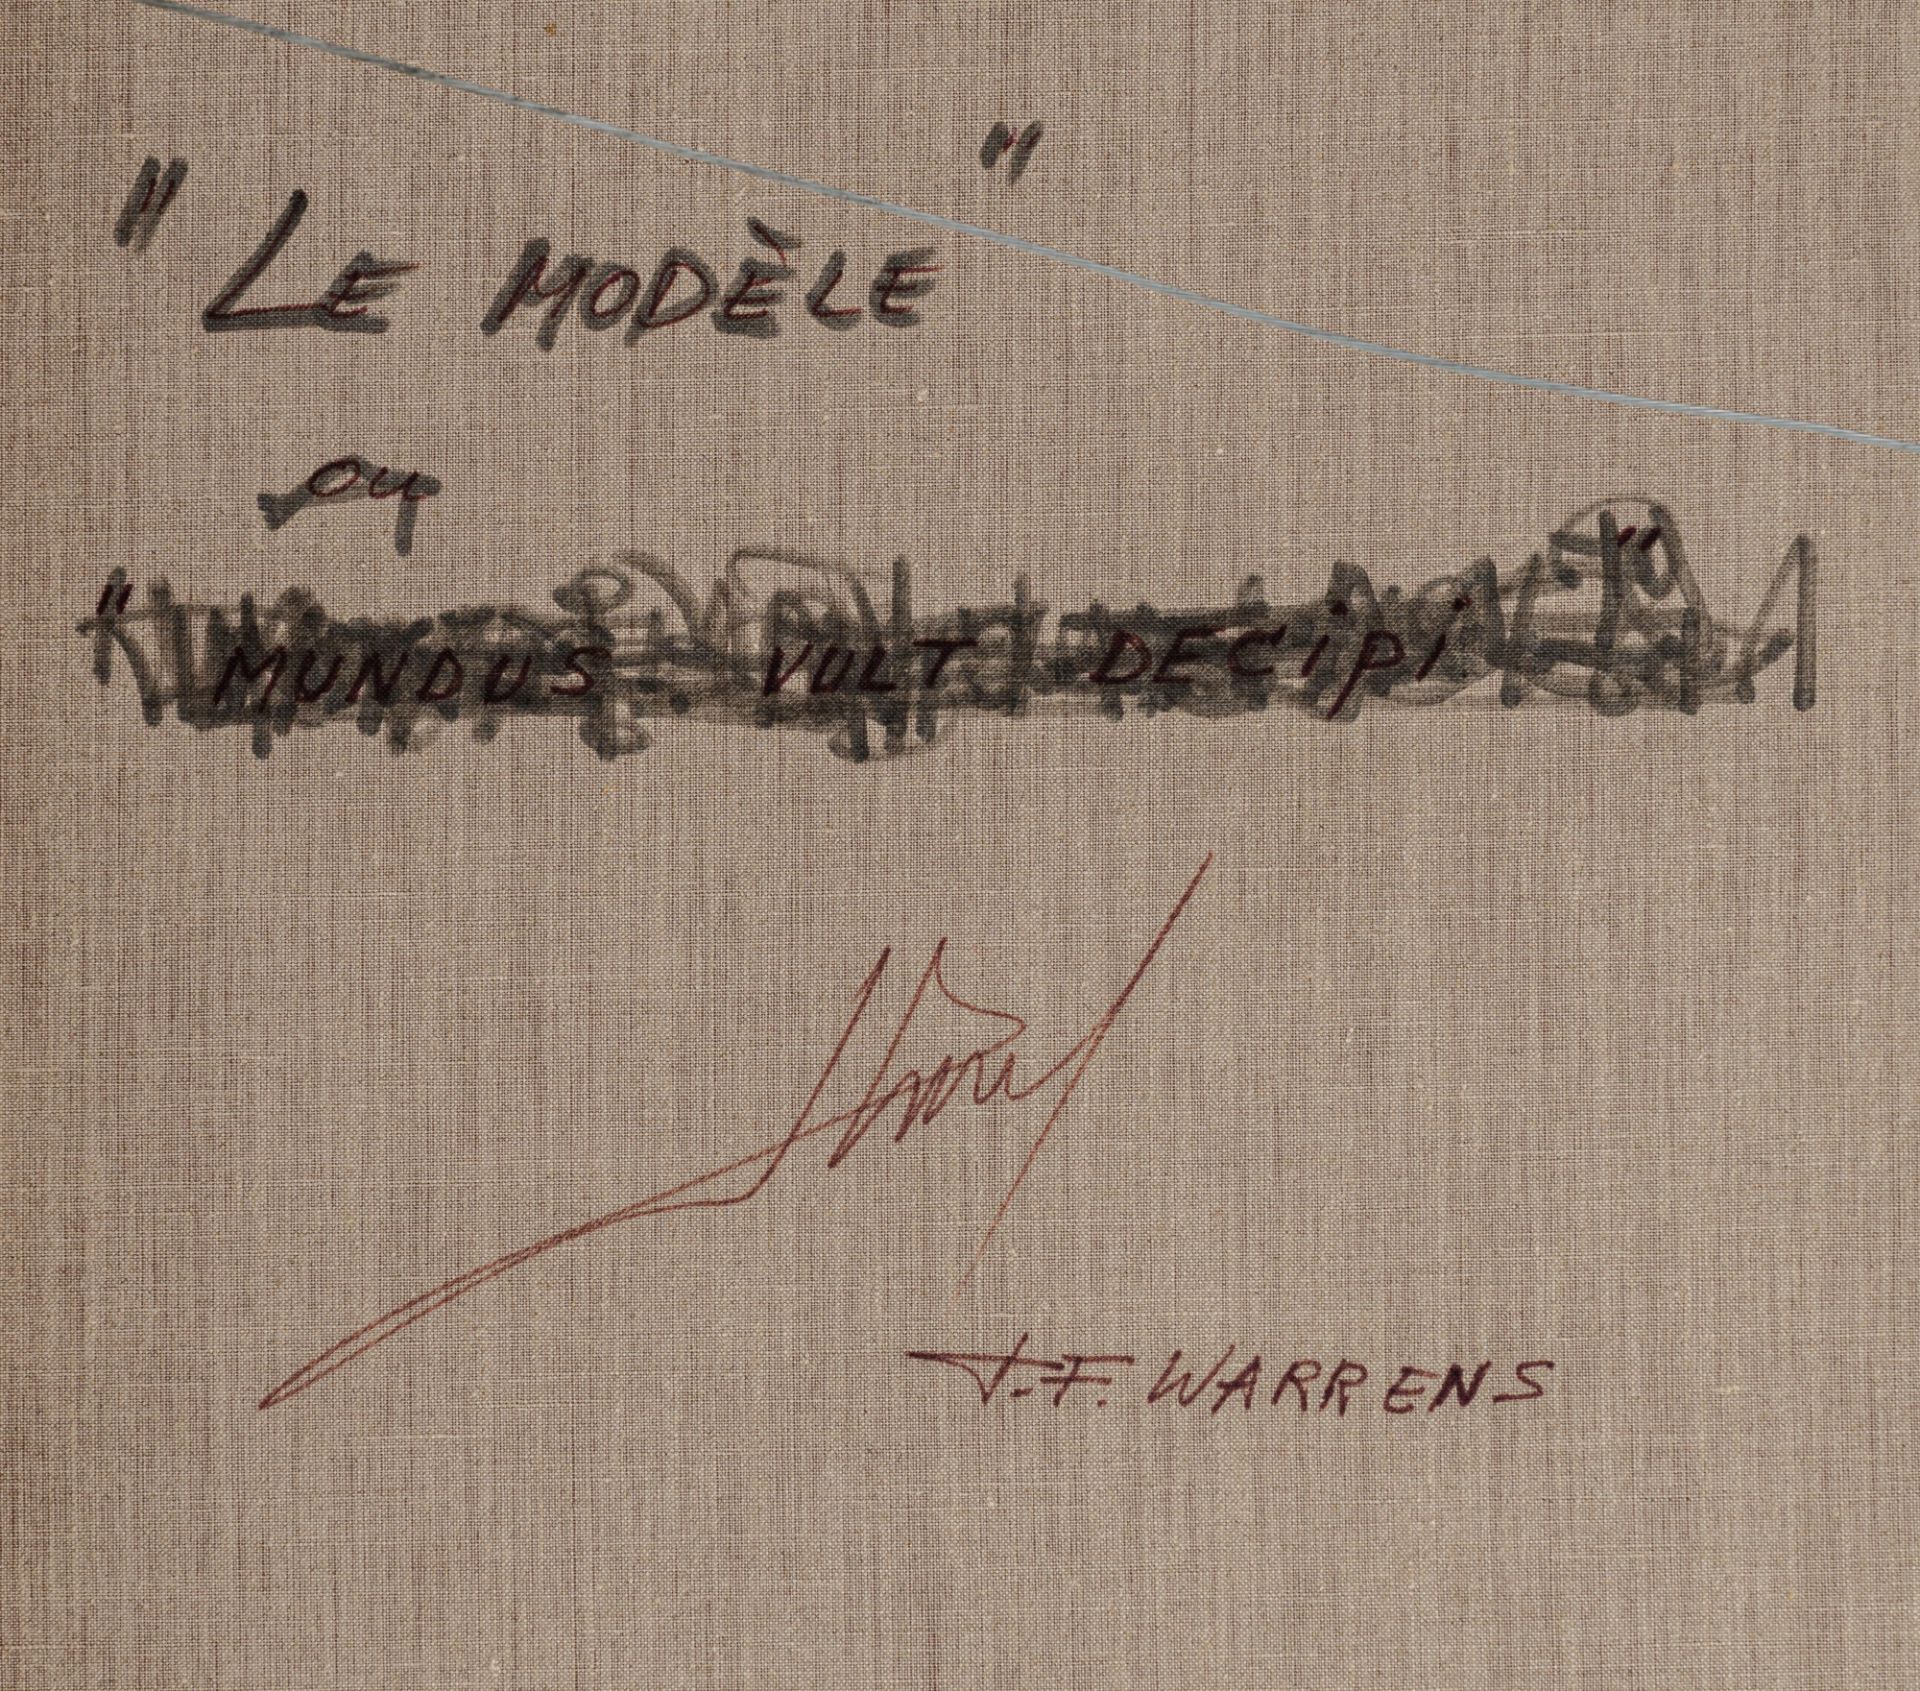 Warrens T., 'Le modŠle', oil on canvas, 90 x 130 cm, Is possibly subject of the SABAM legislation / - Bild 4 aus 6